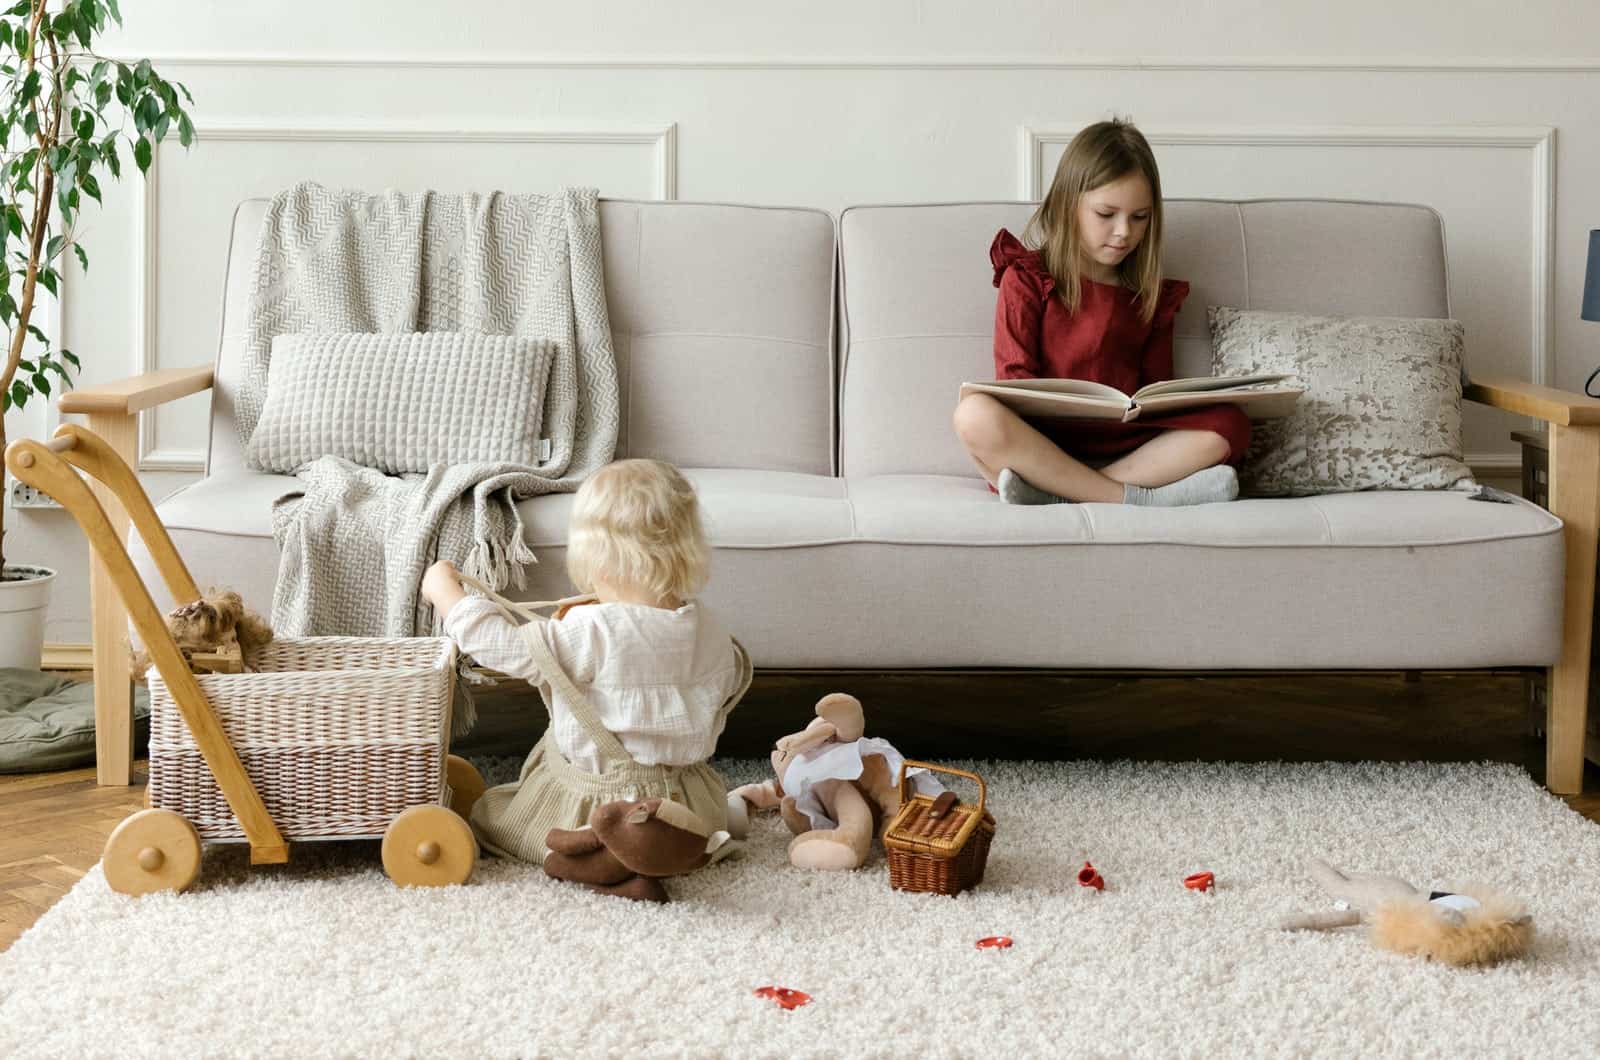 fille lisant sur un canapé pendant que sa sœur joue par terre